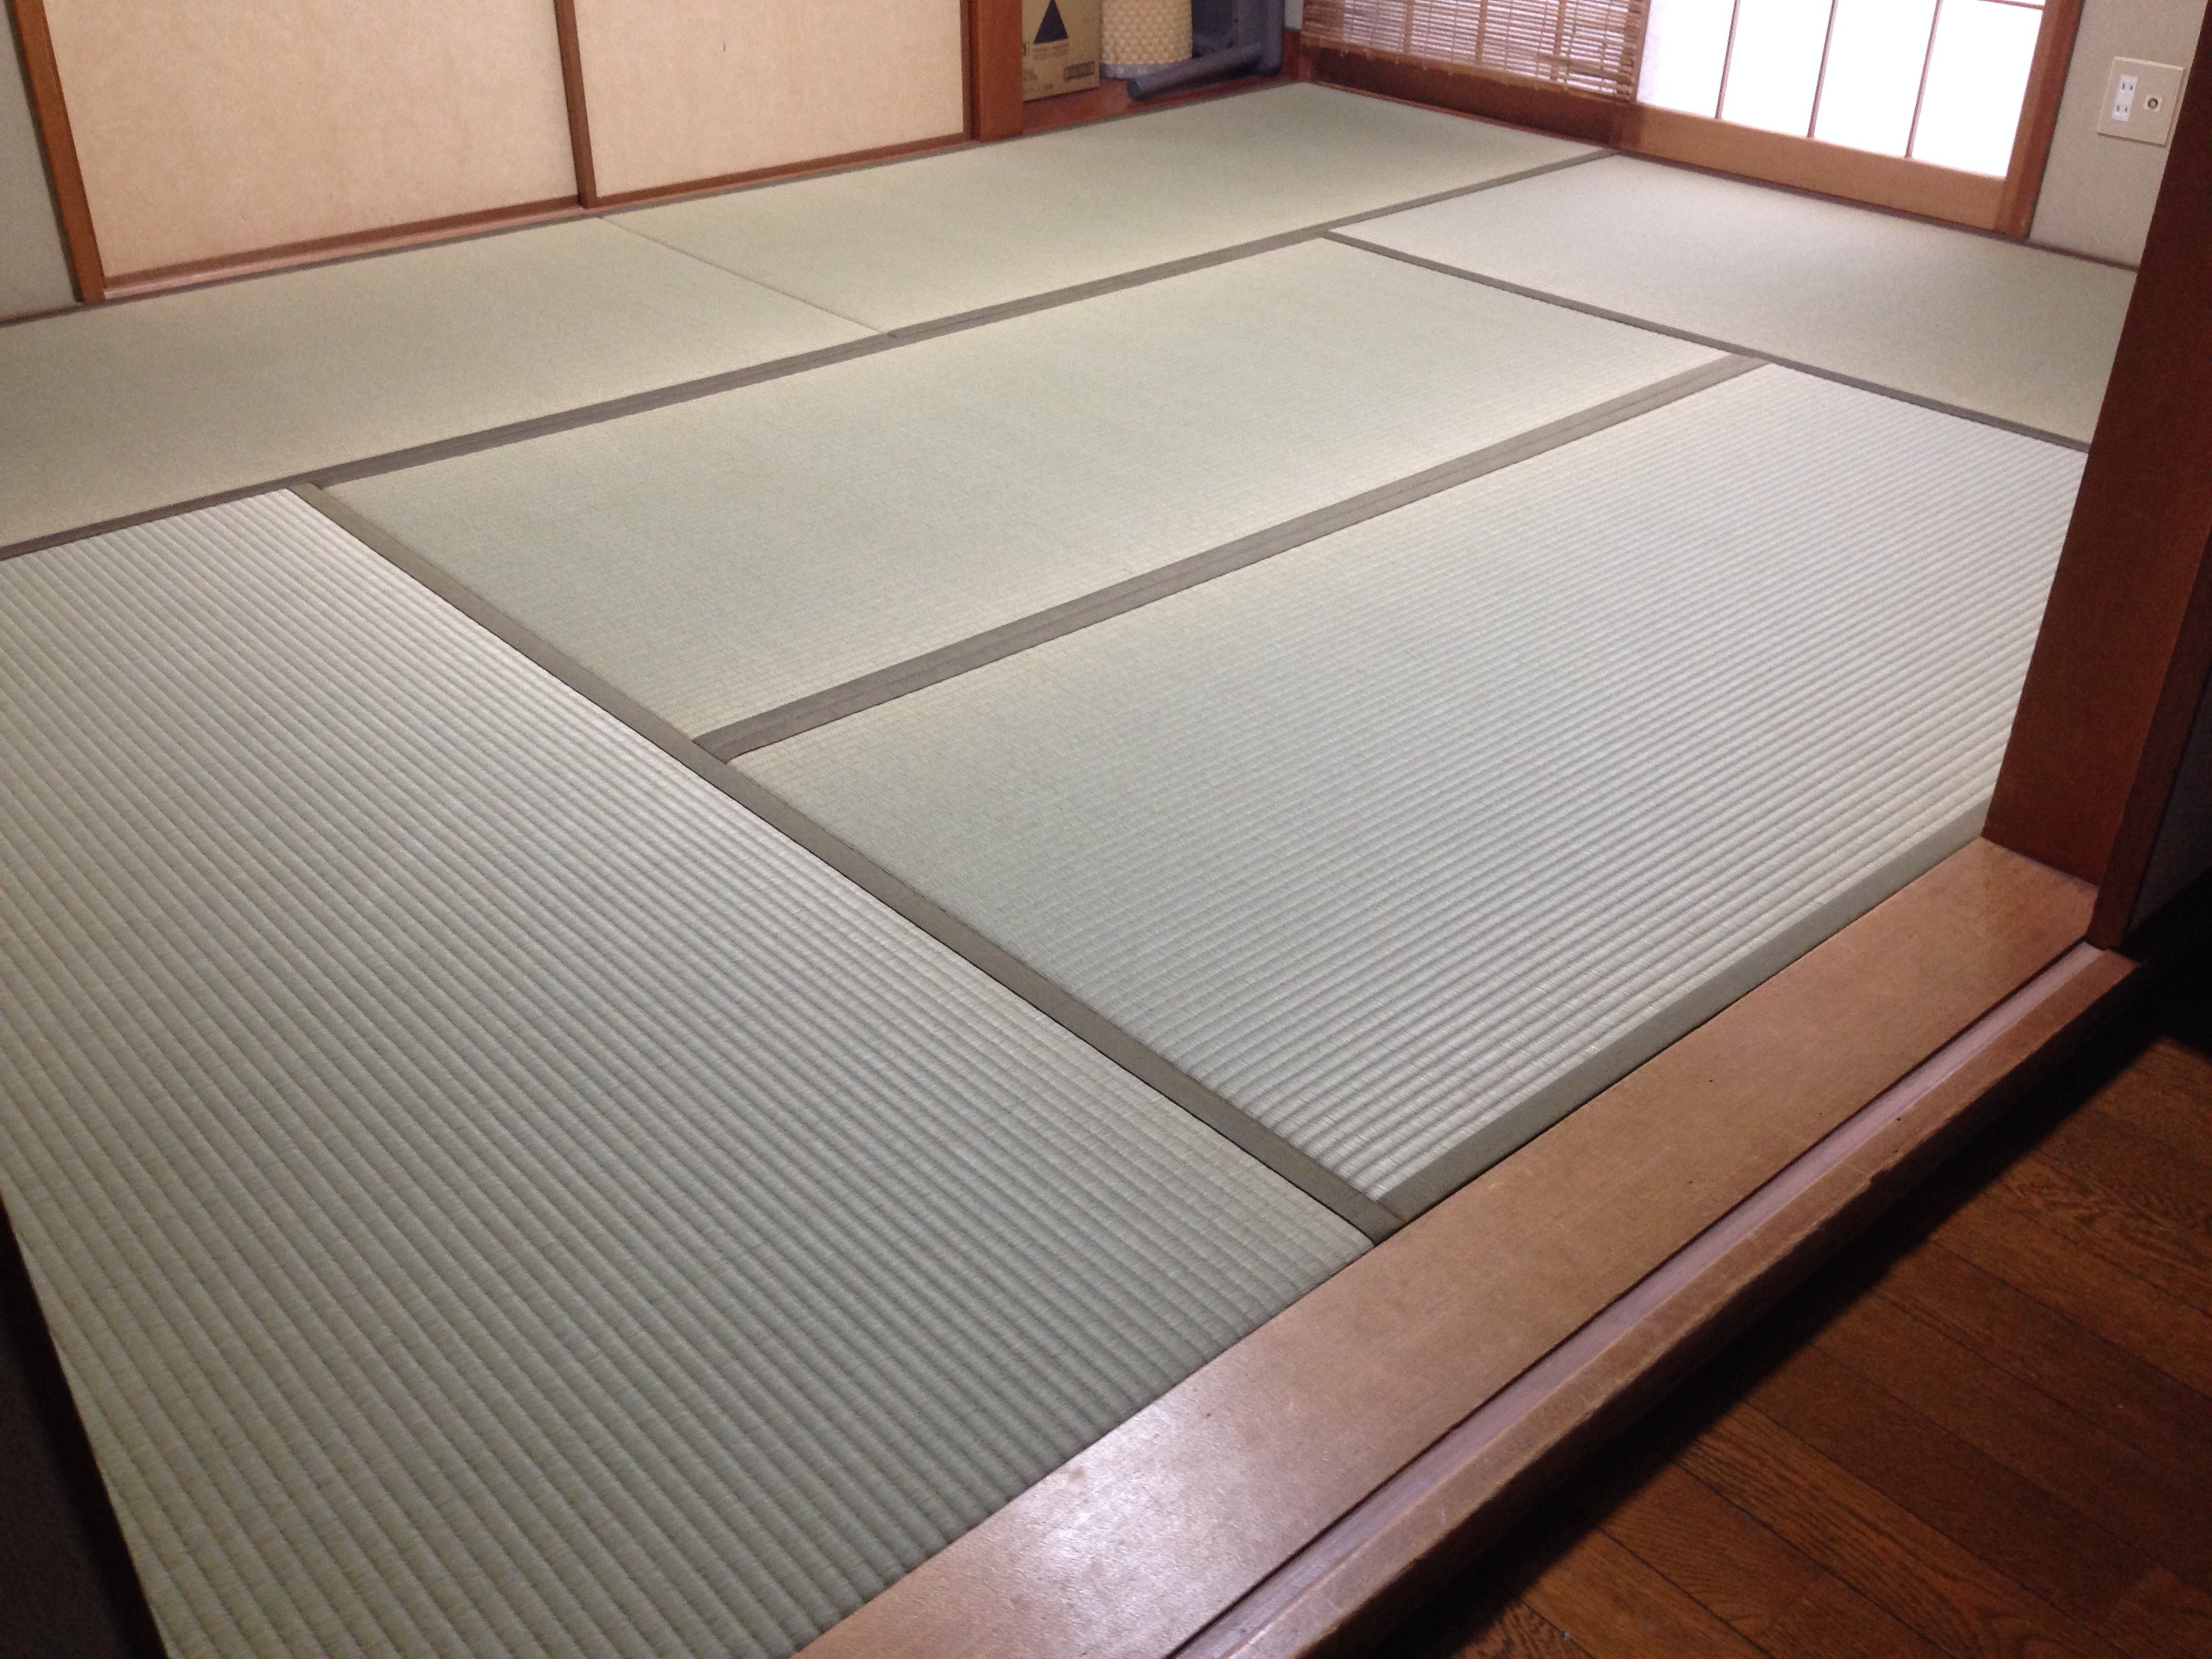 新しい畳に交換 お客様よりコメントをいただきました 茨城県と埼玉県で畳の事なら置き畳から琉球畳まで 日本の畳を守りたい 有 渡沼畳店